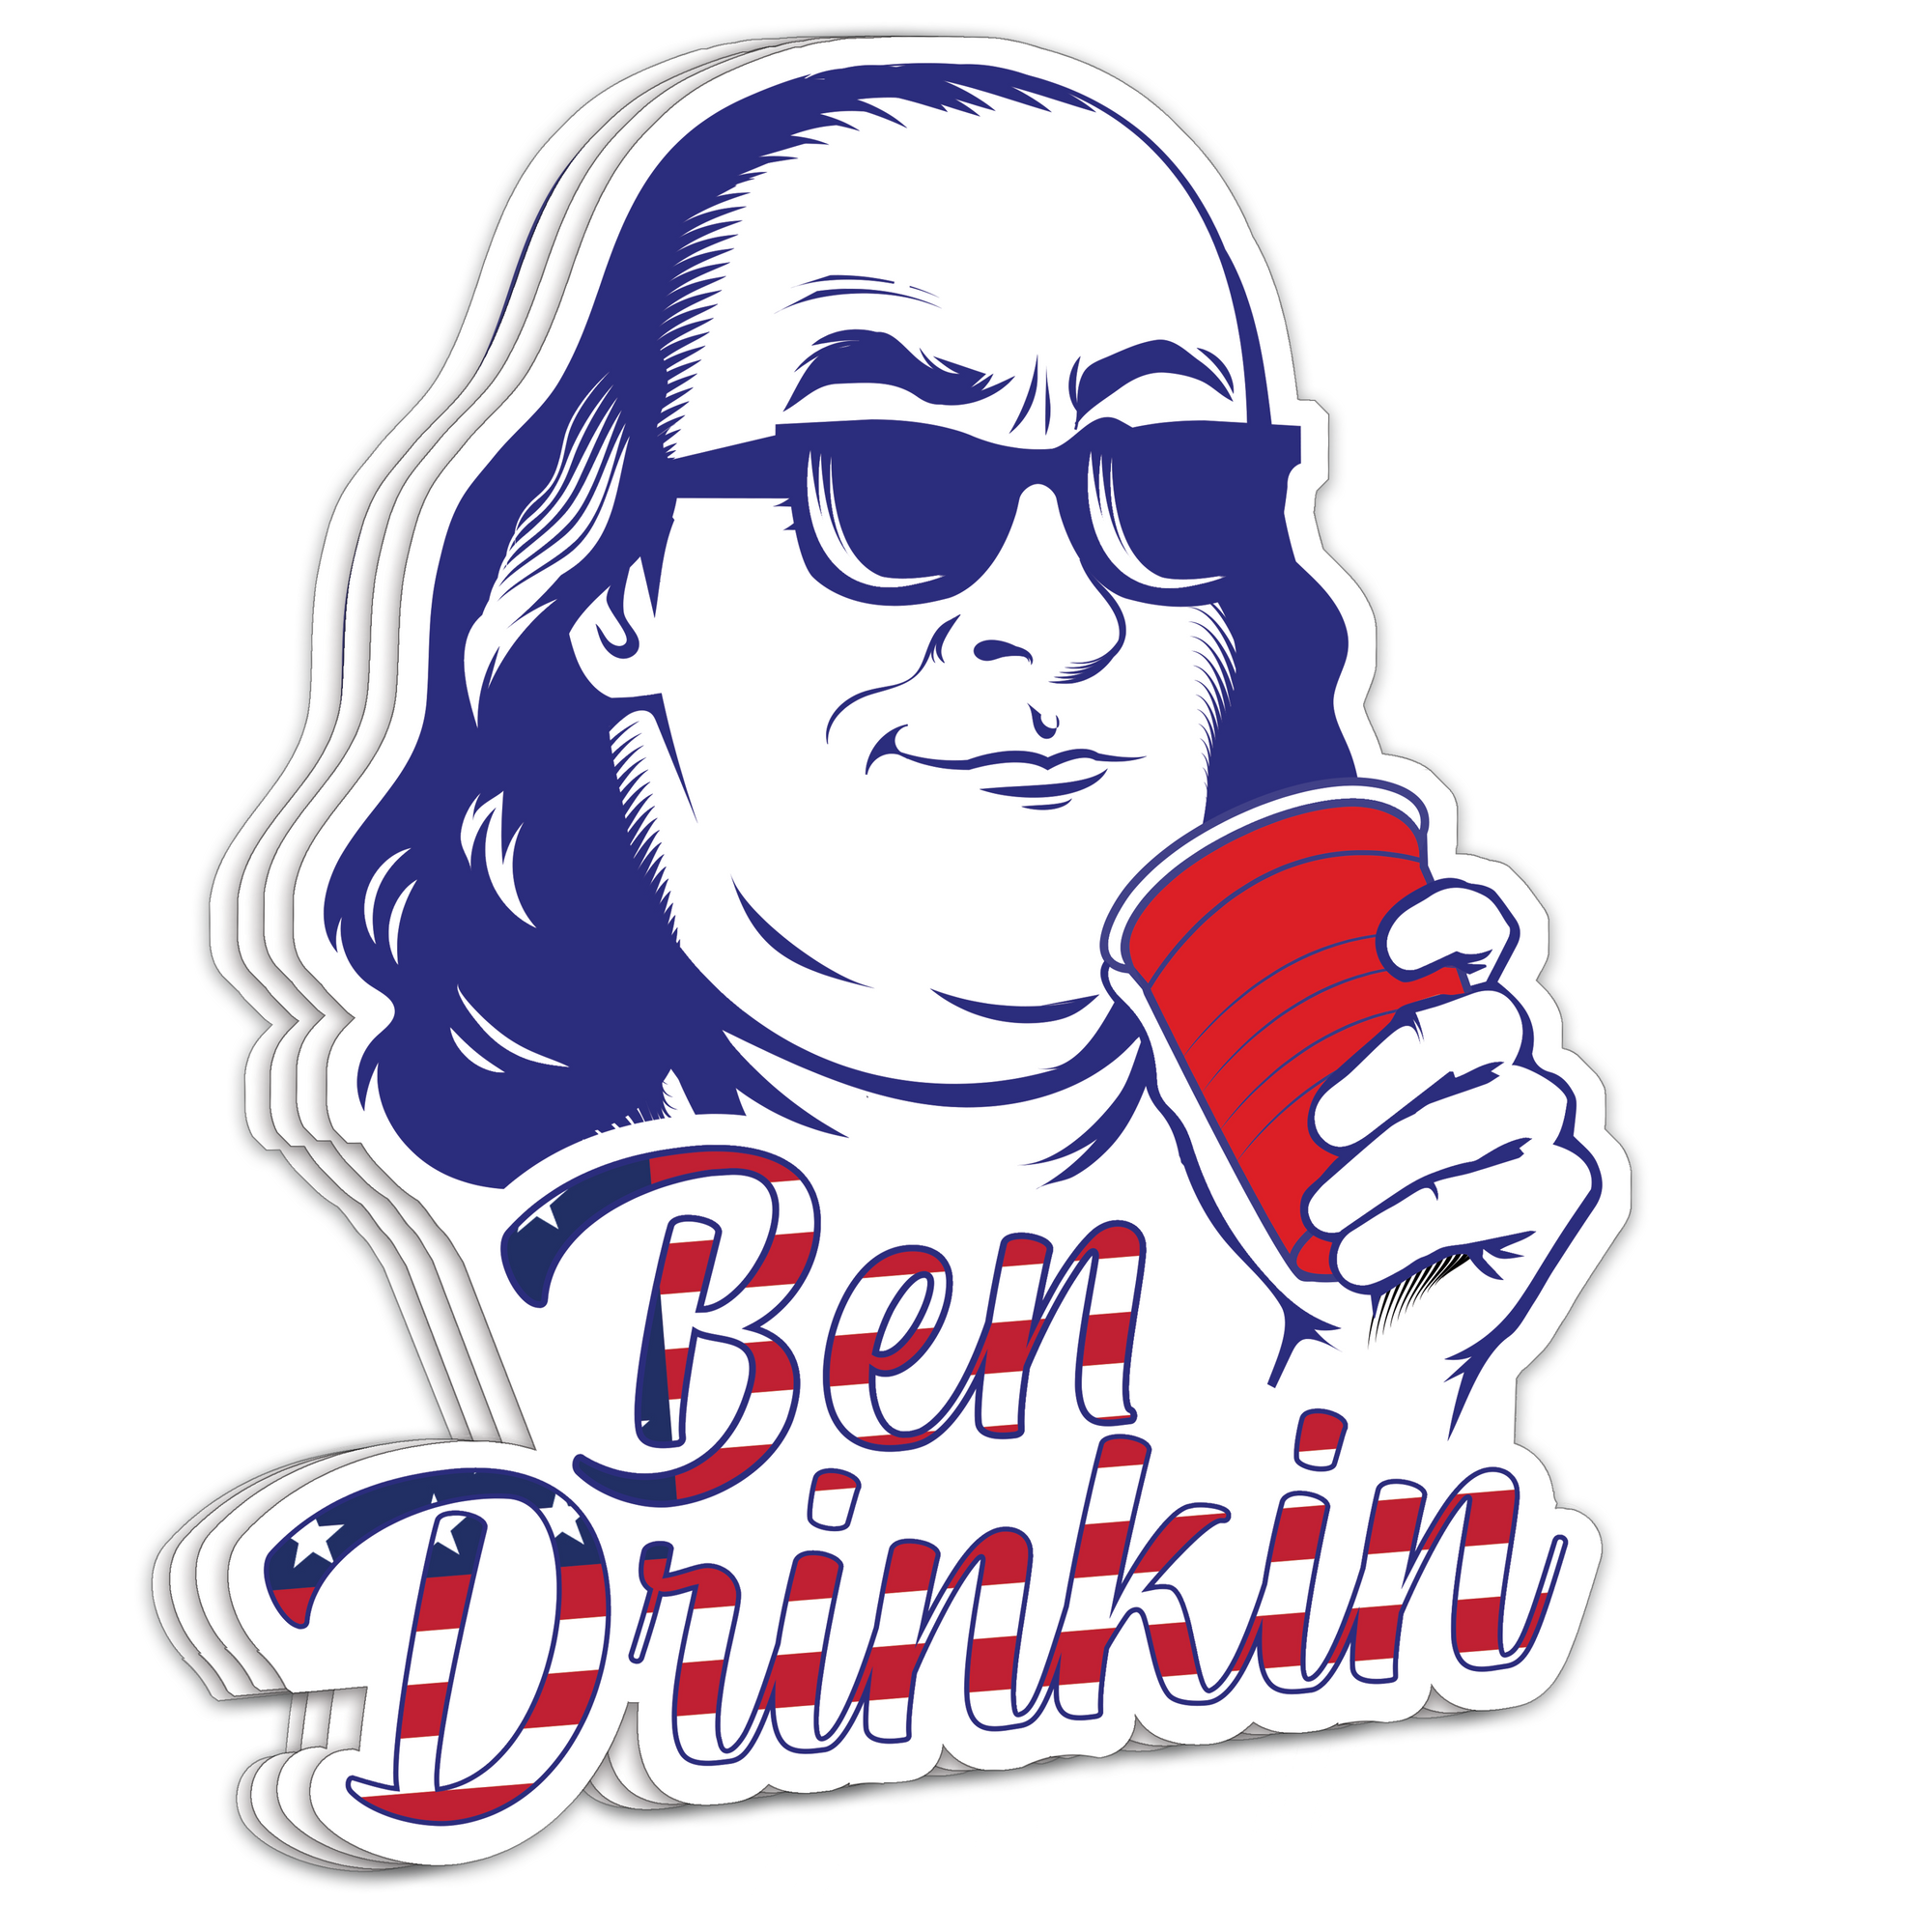 "Ben Drinkin" - Decal